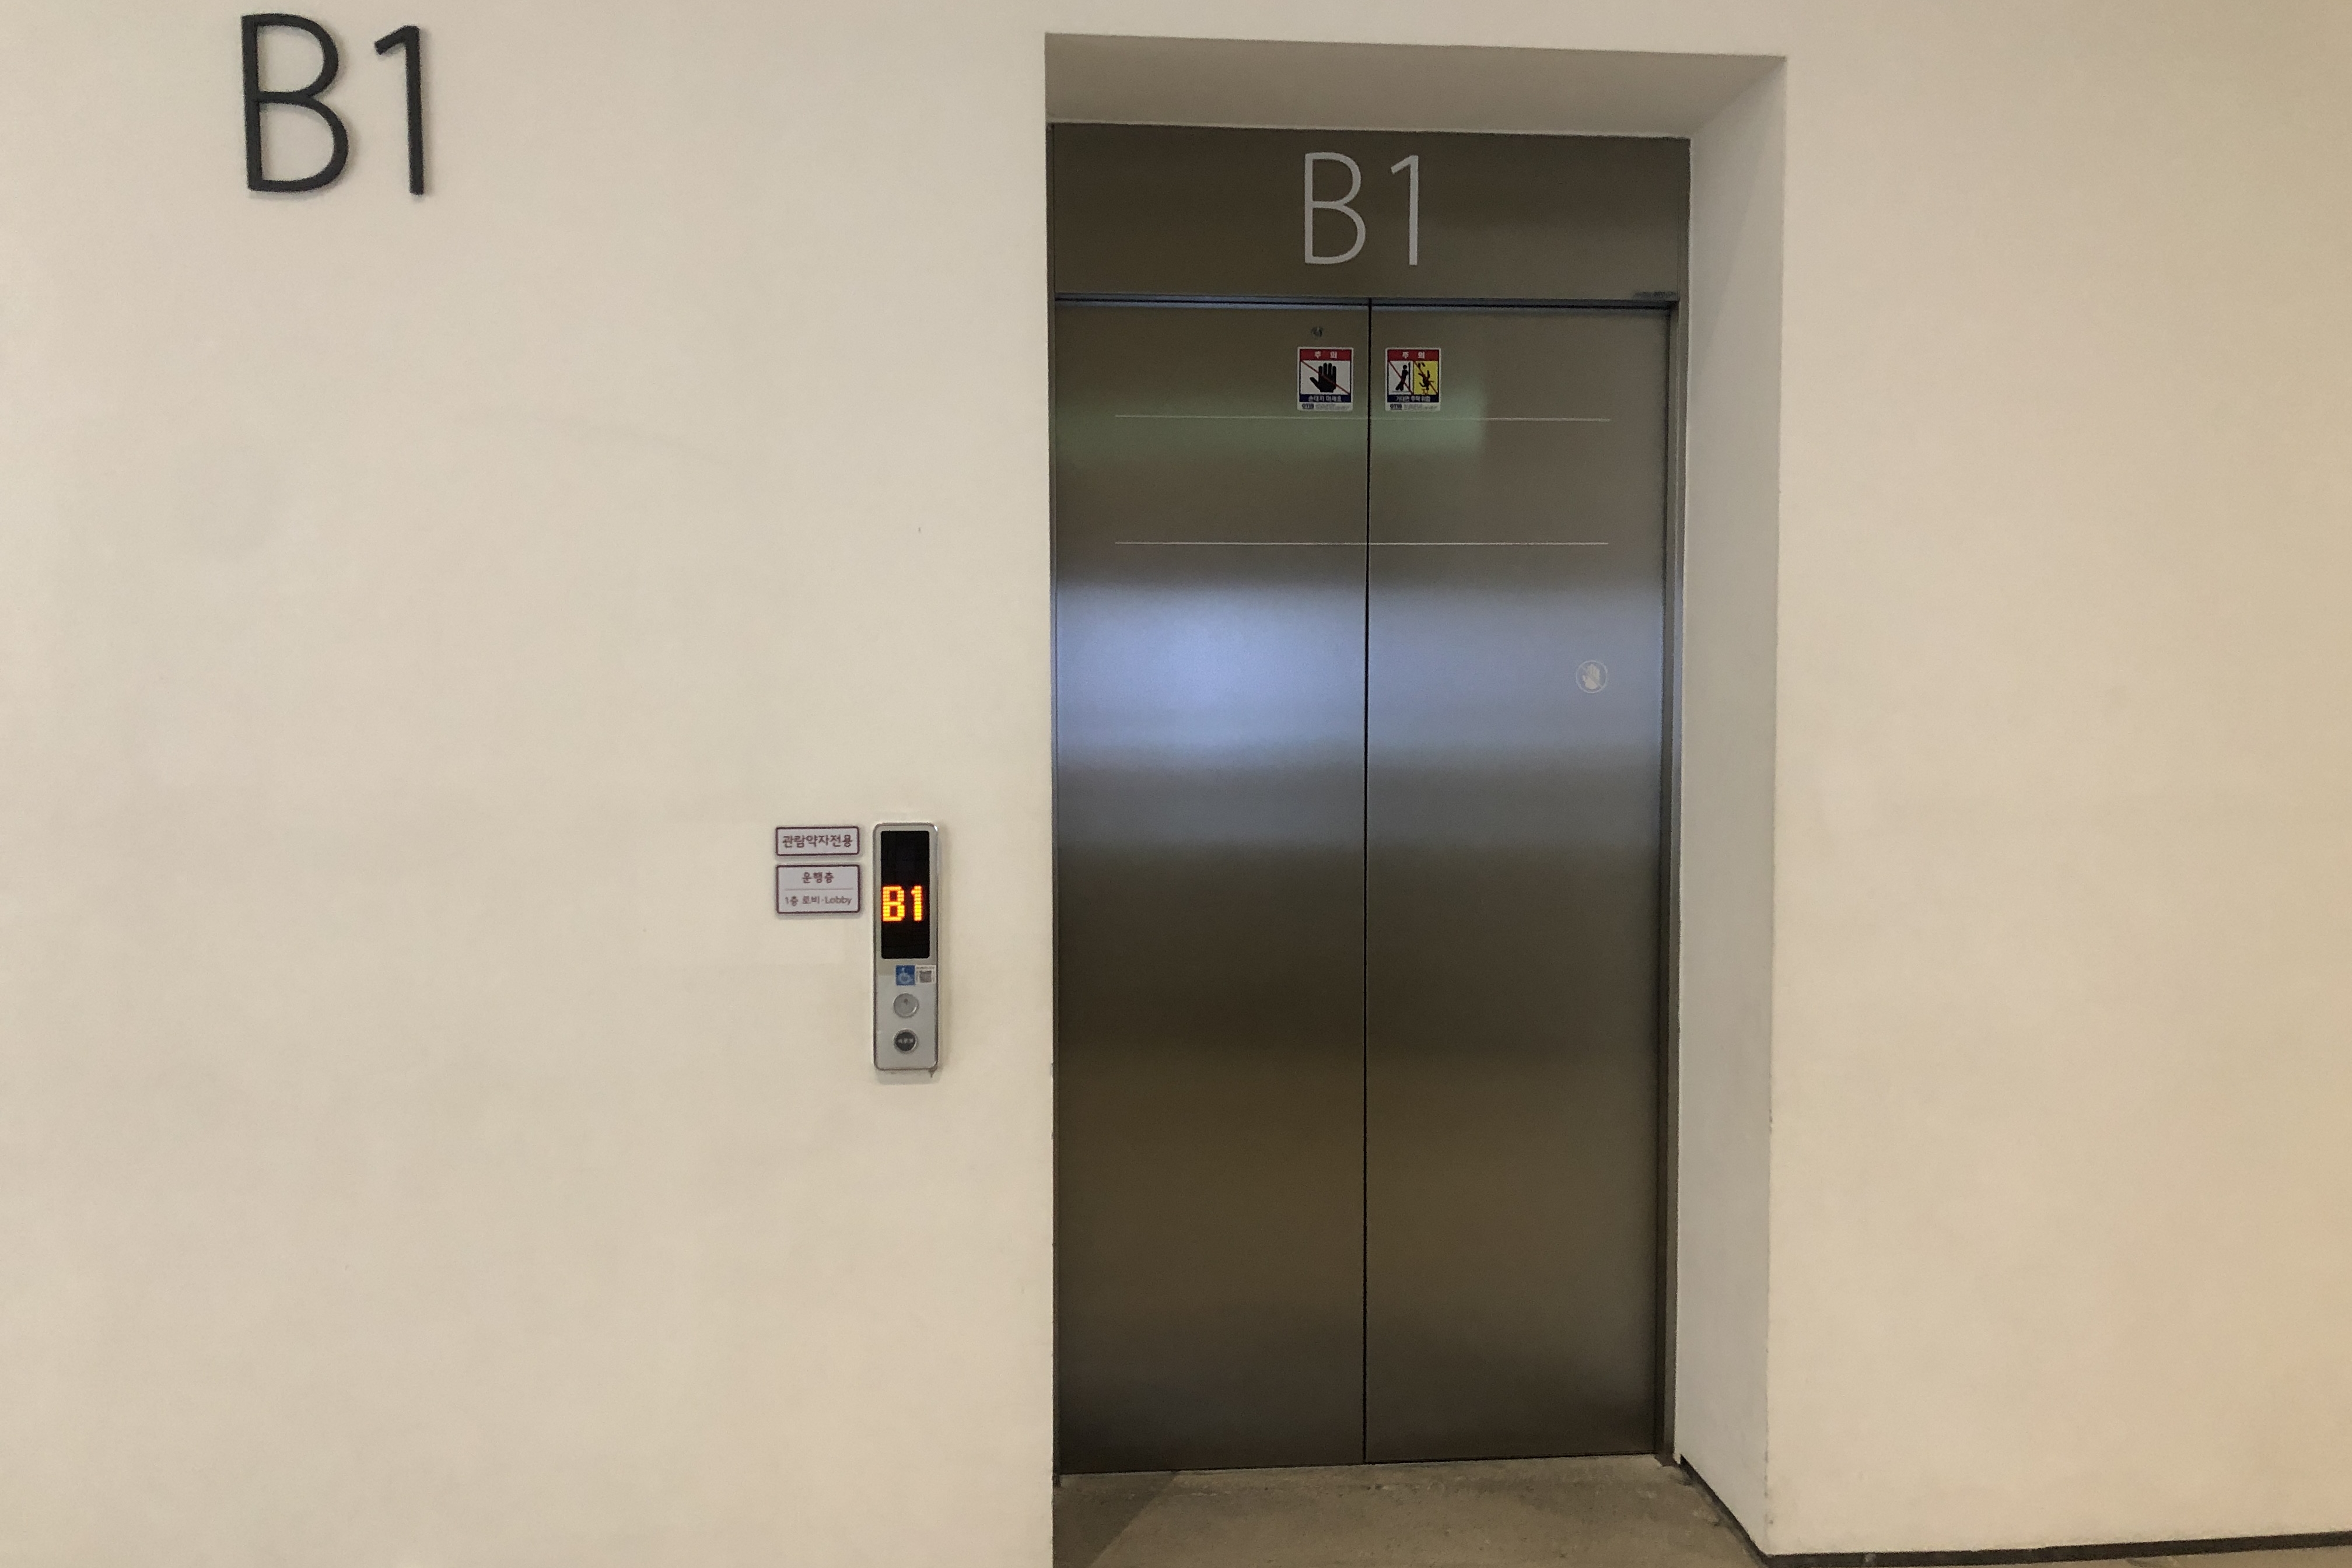 엘리베이터0 : 국립현대미술관서울관 엘리베이터 입구2